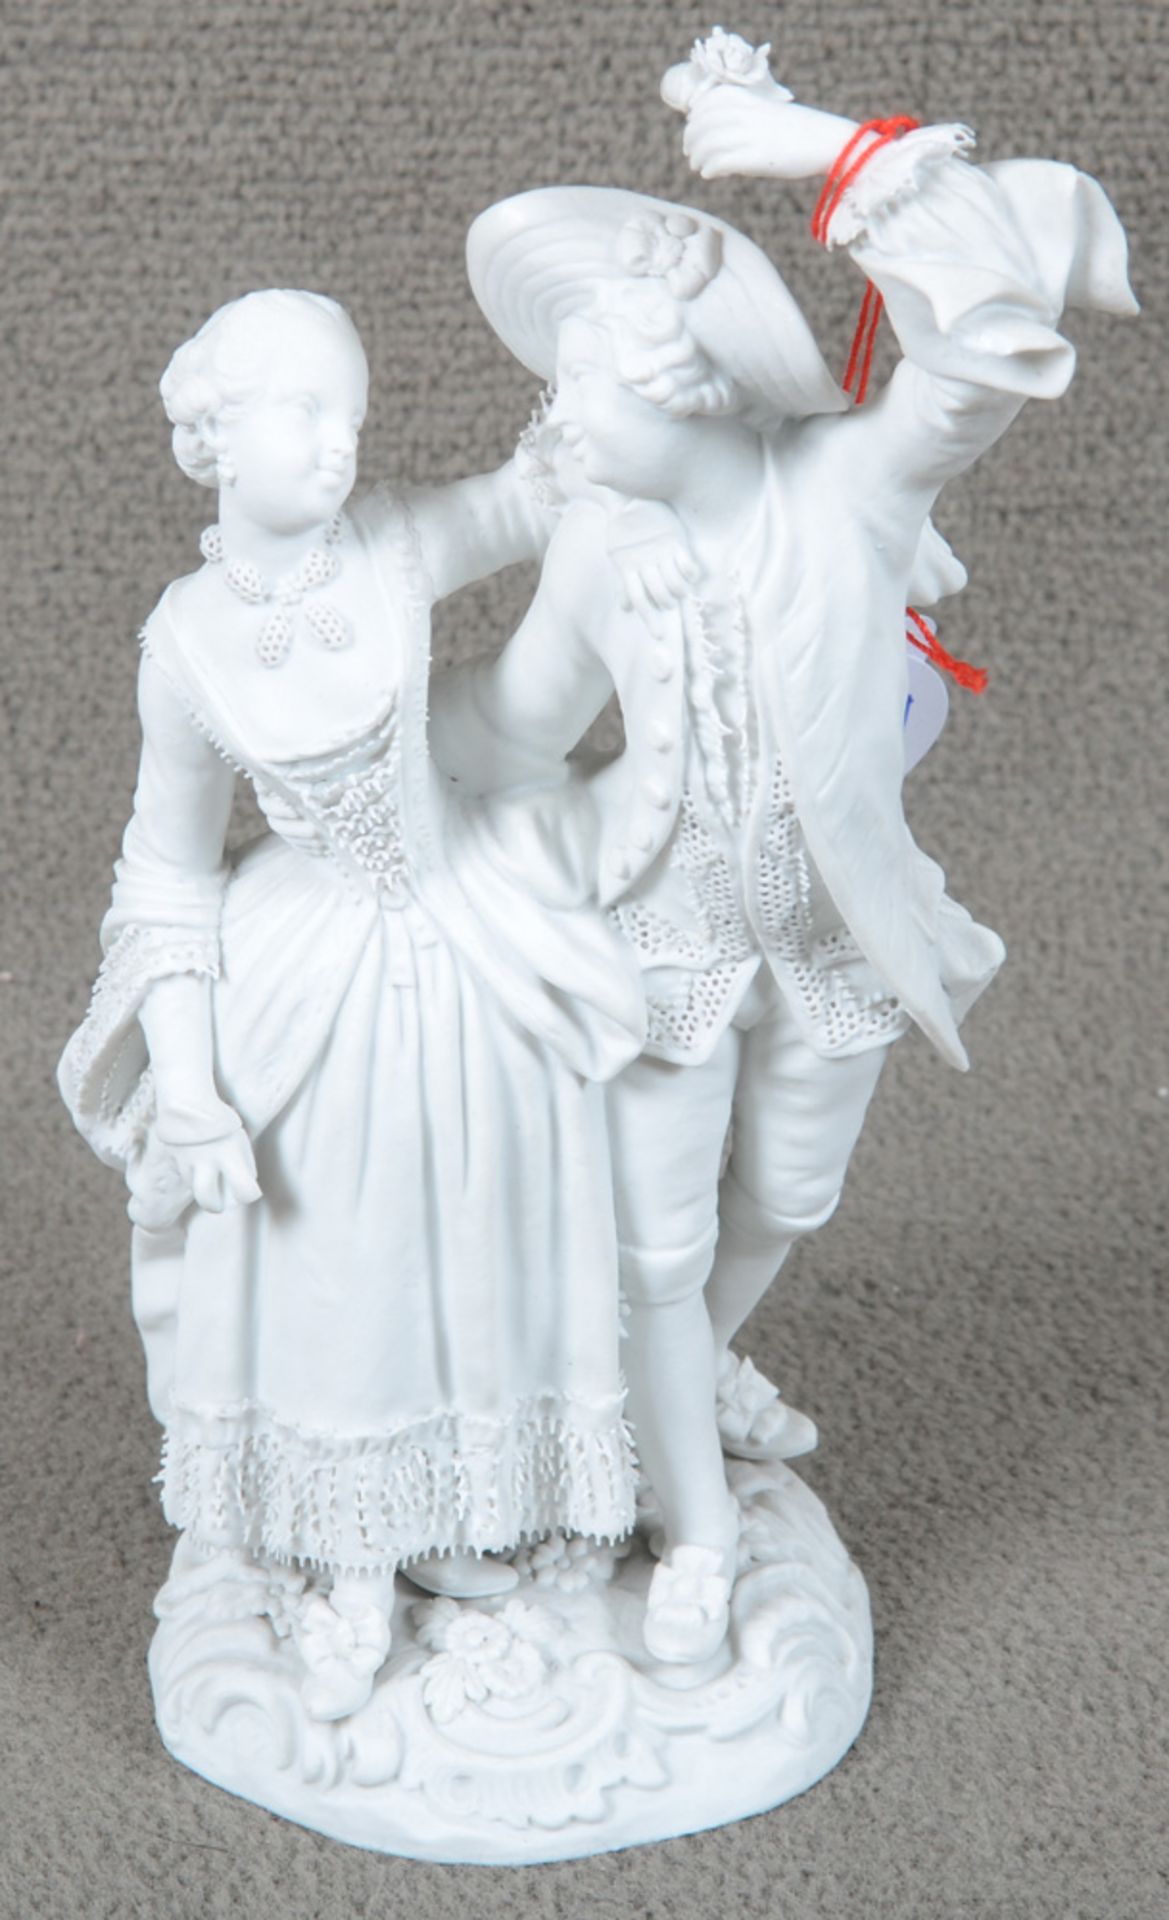 Tanzendes Gärtnerpaar. Meissen 19. Jh. Weißes Bisquitporzellan, am Boden eingepresste Schwertermarke